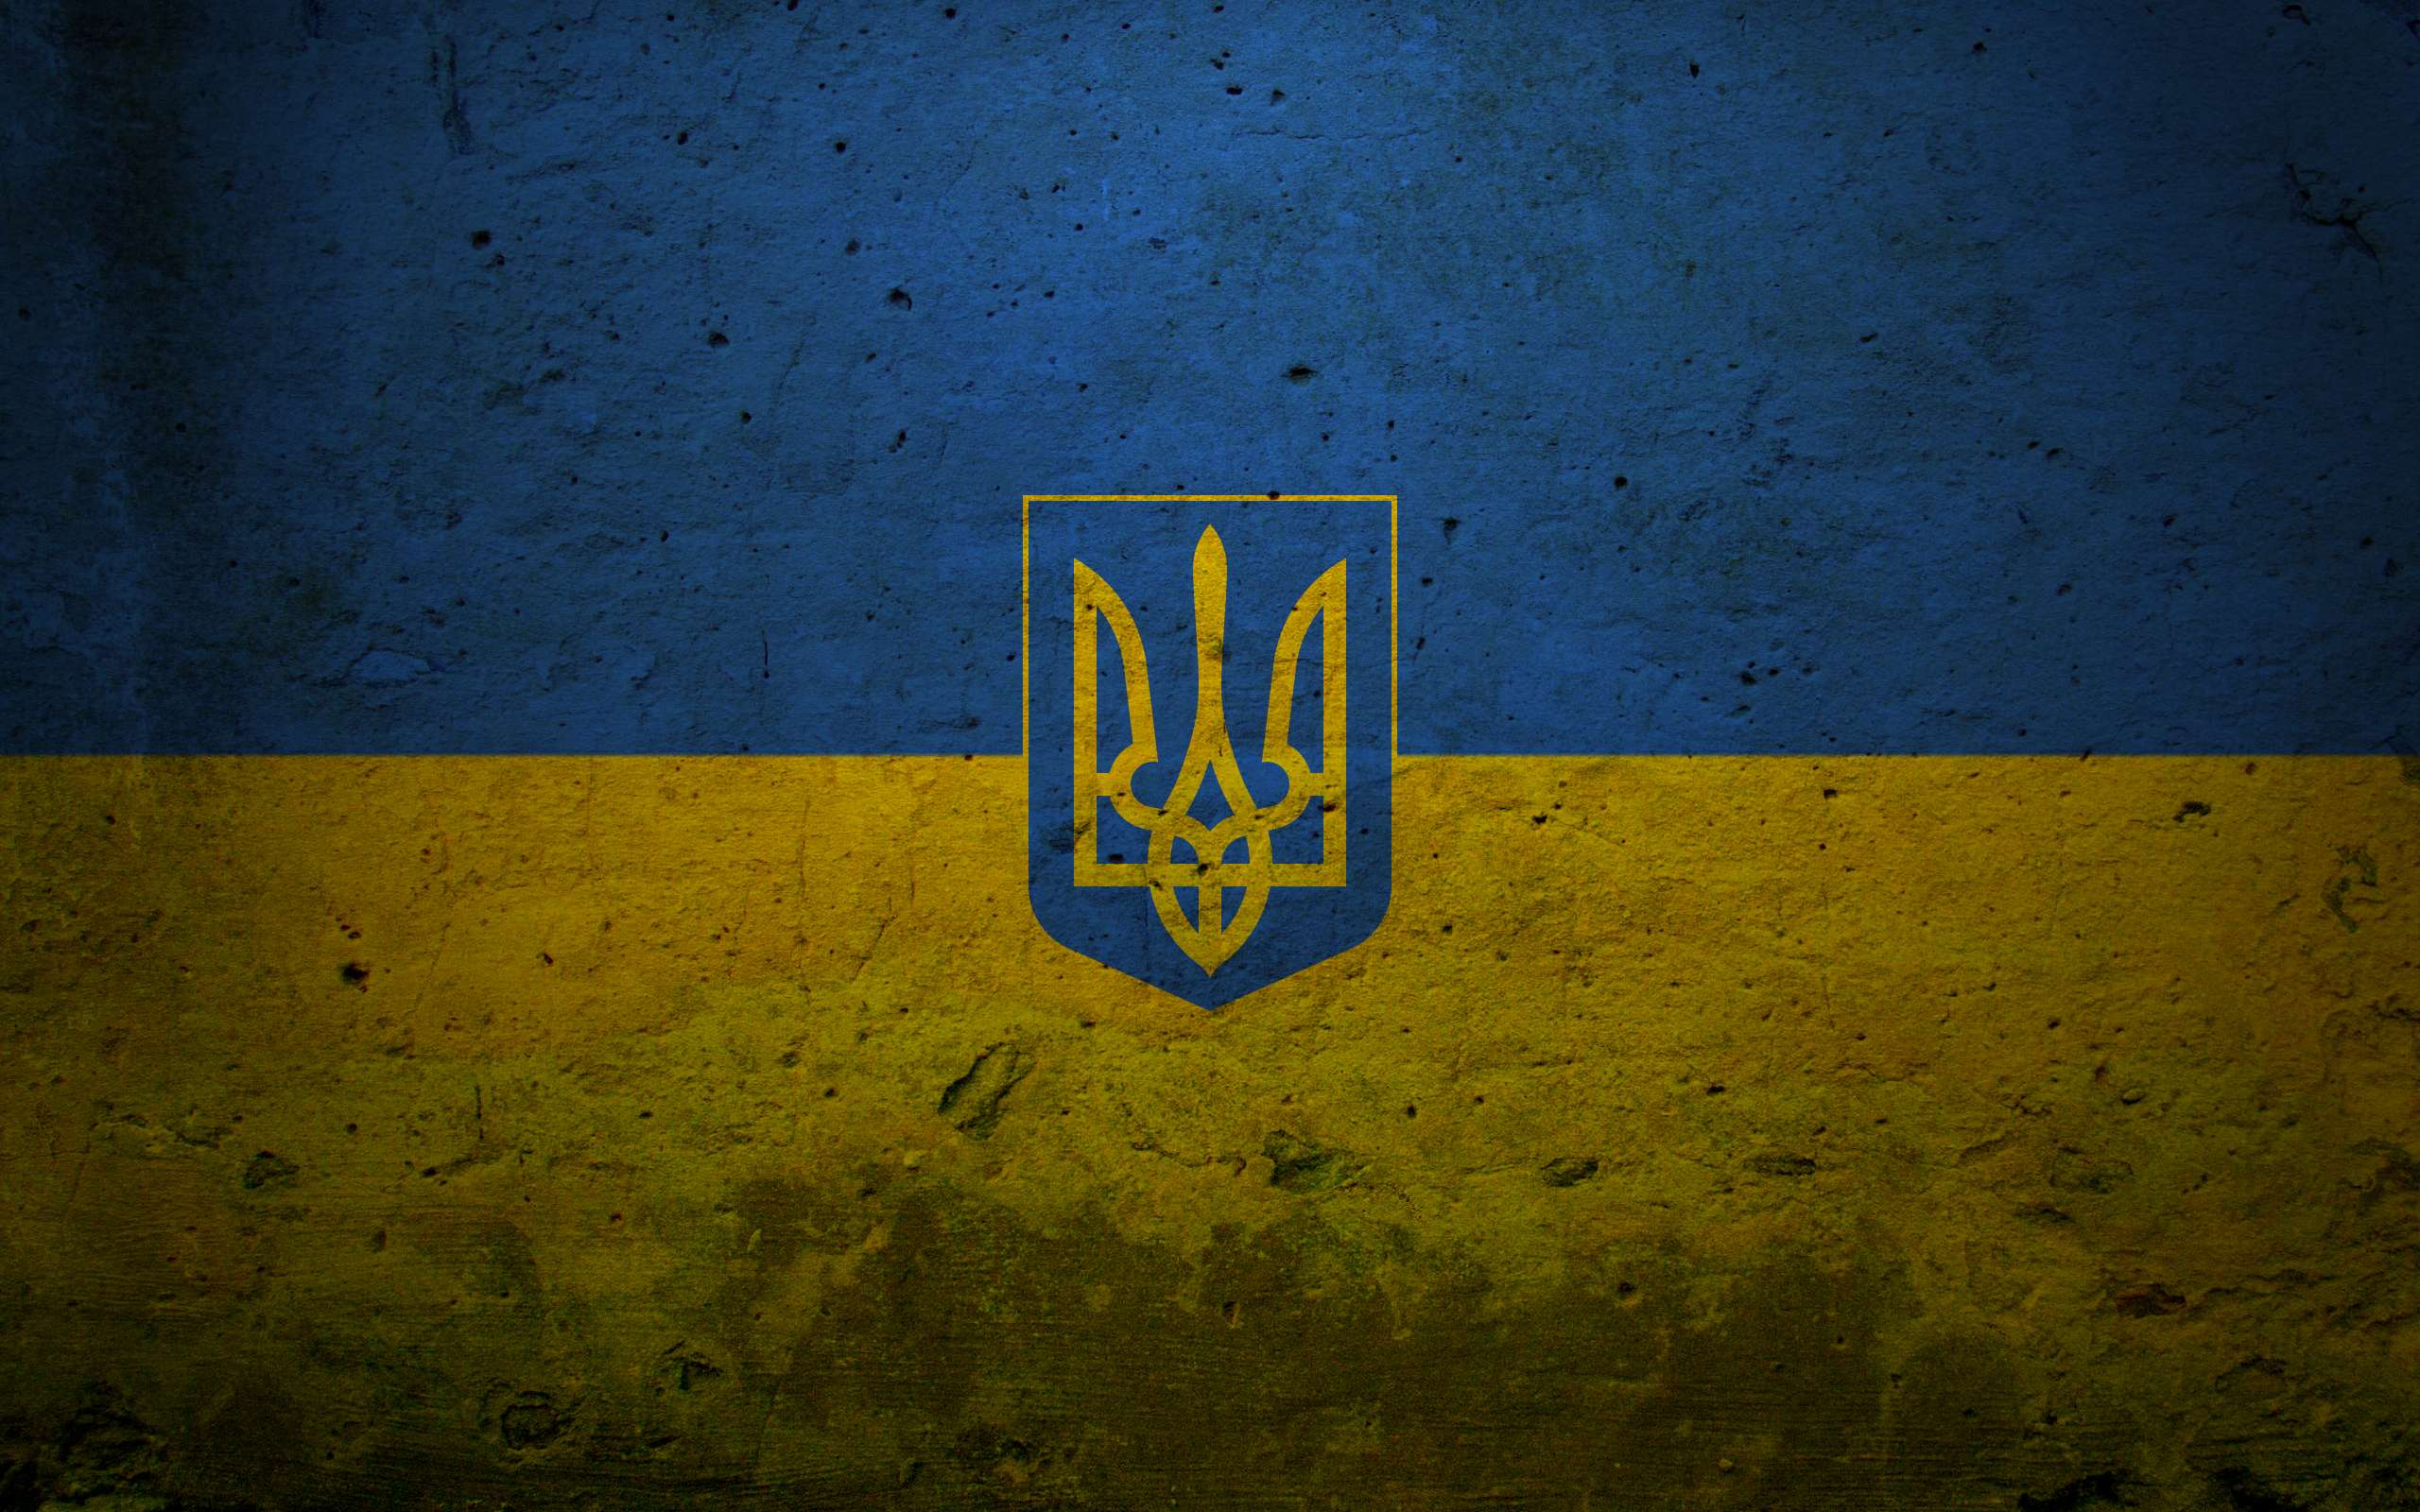 Melhores papéis de parede de Bandeira Da Ucrânia para tela do telefone